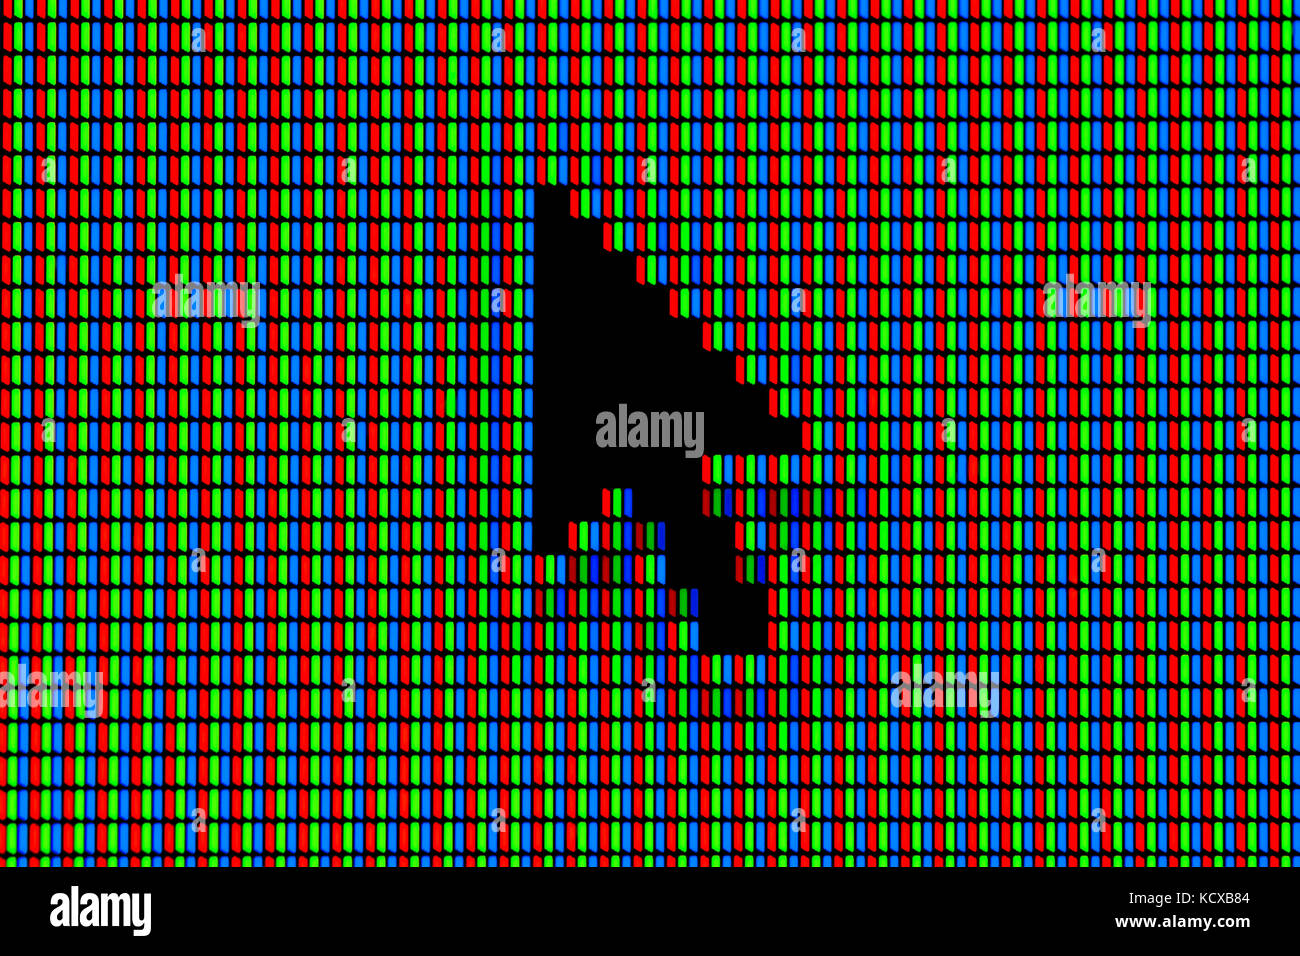 Rgb-LED-Dioden von einem Bildschirm/pixel Makro Stockfoto